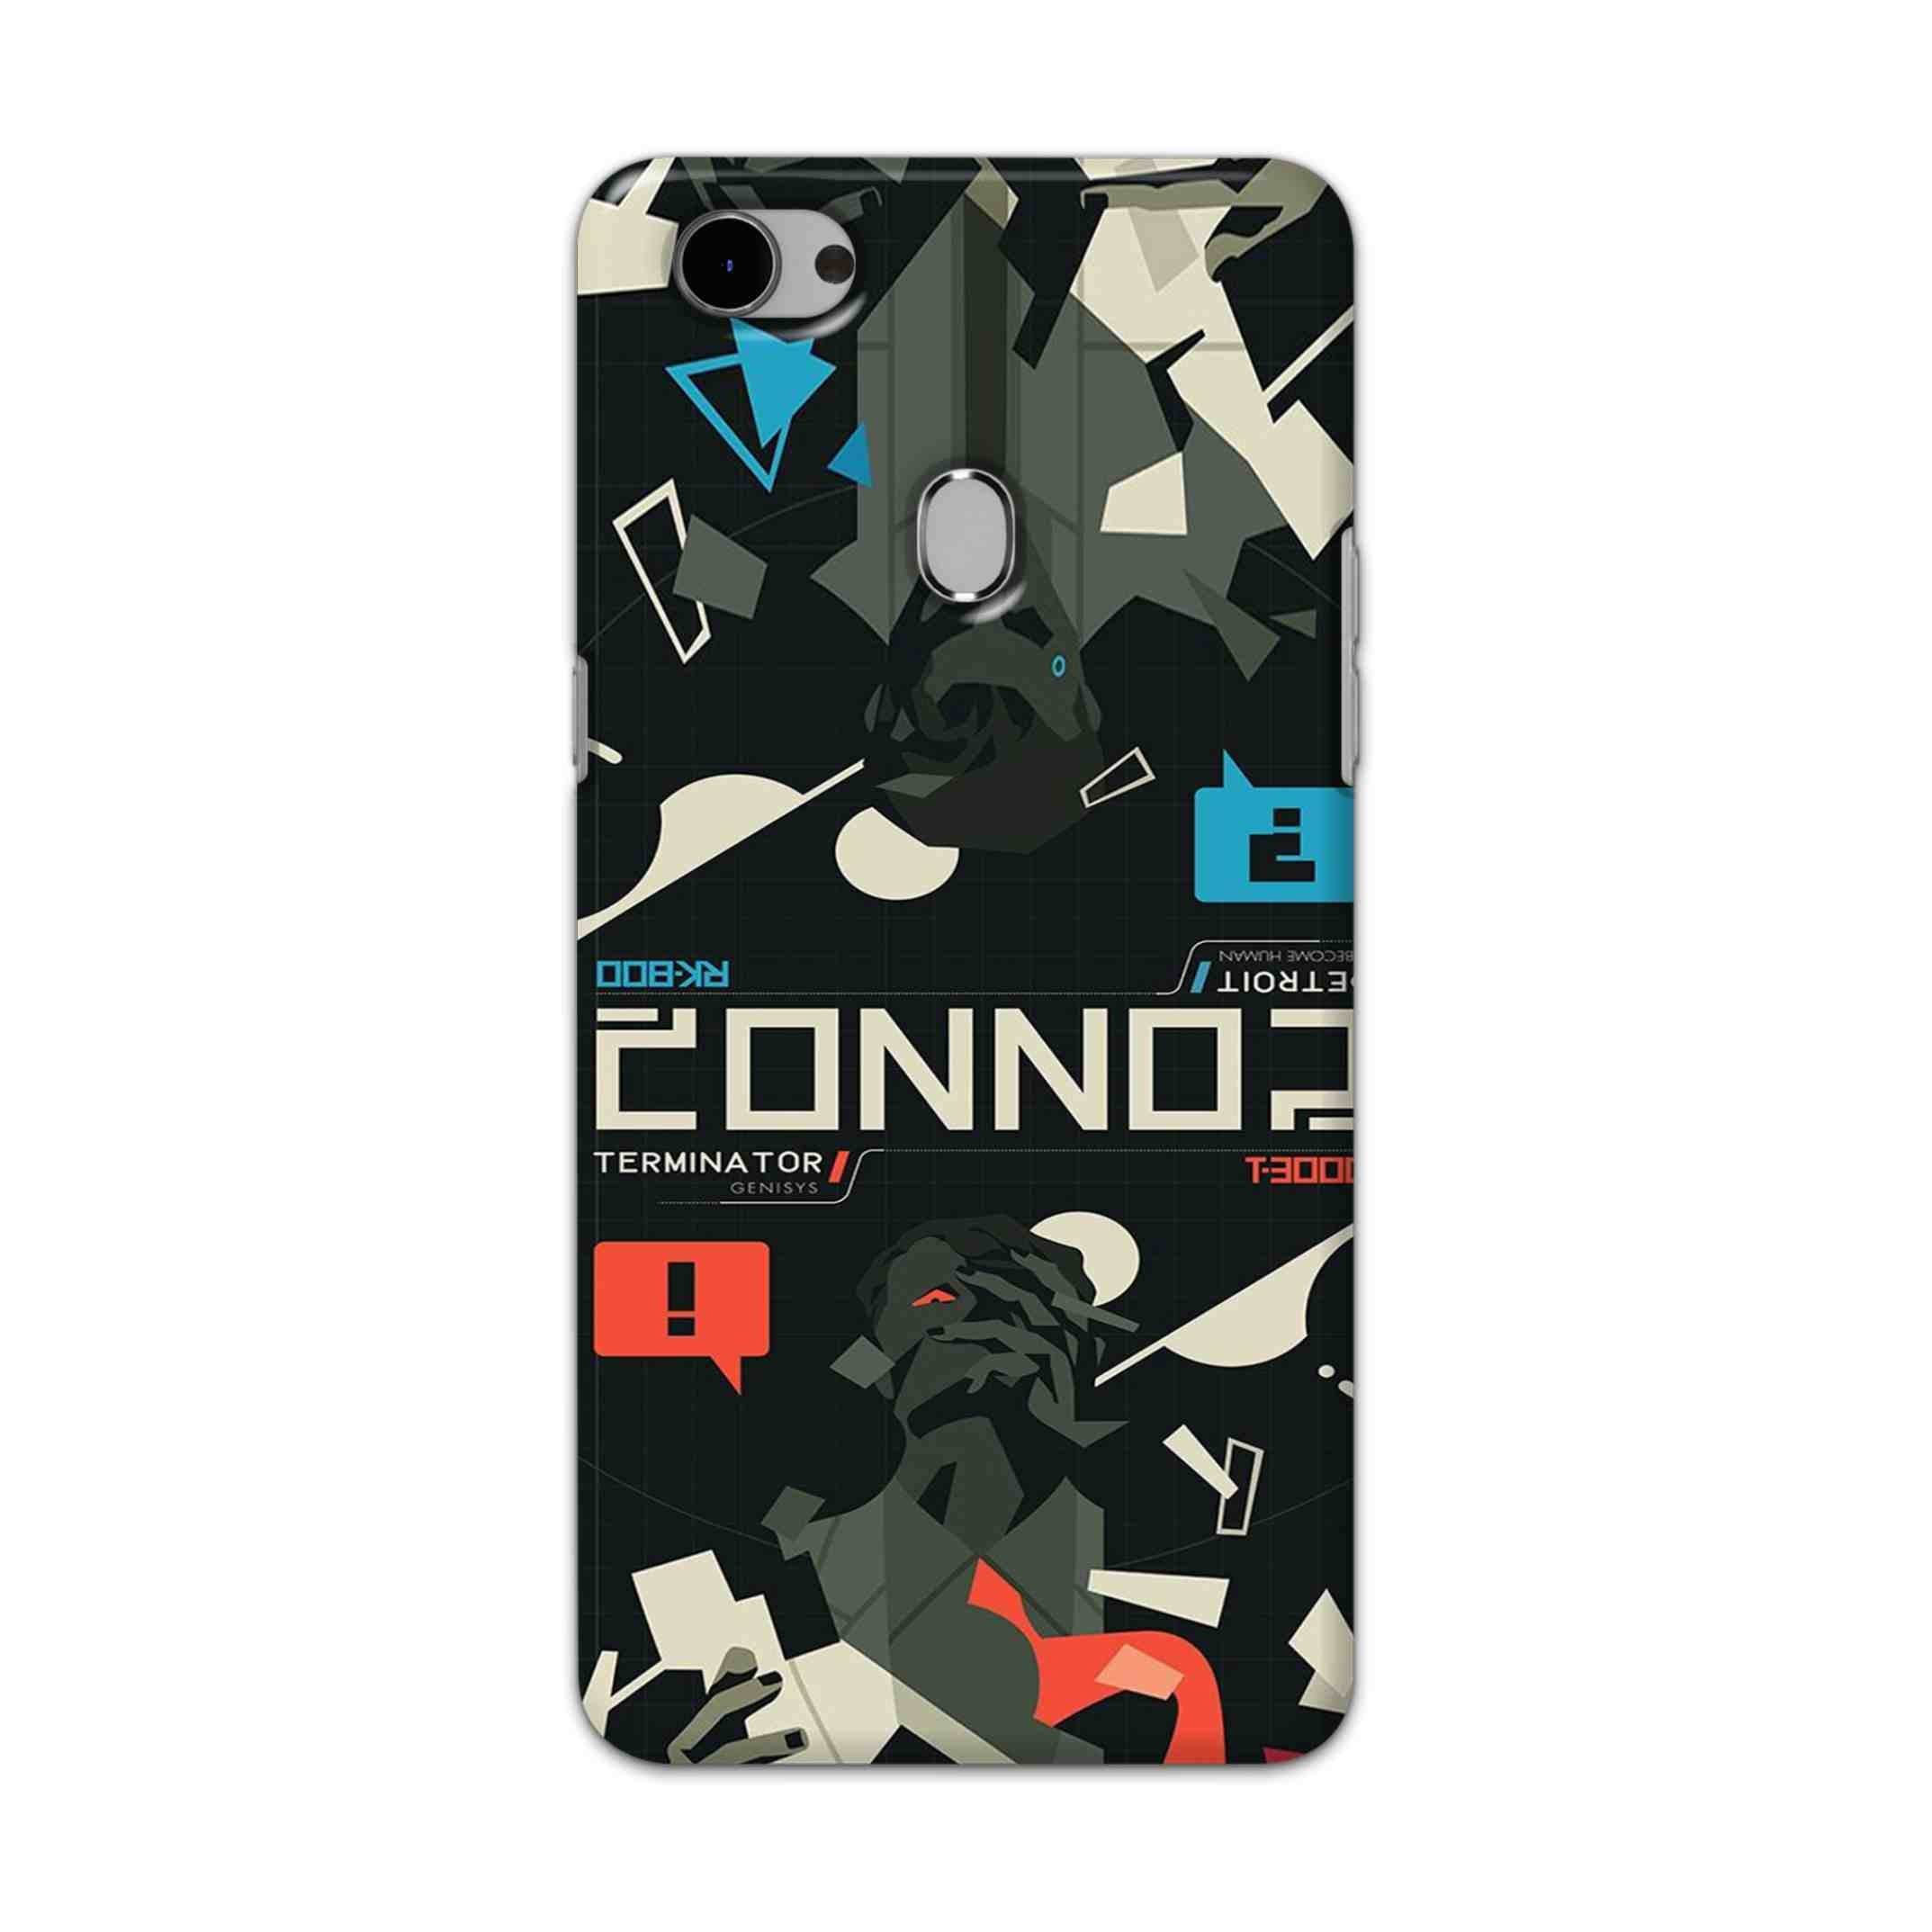 Buy Terminator Hard Back Mobile Phone Case Cover For Oppo F7 Online